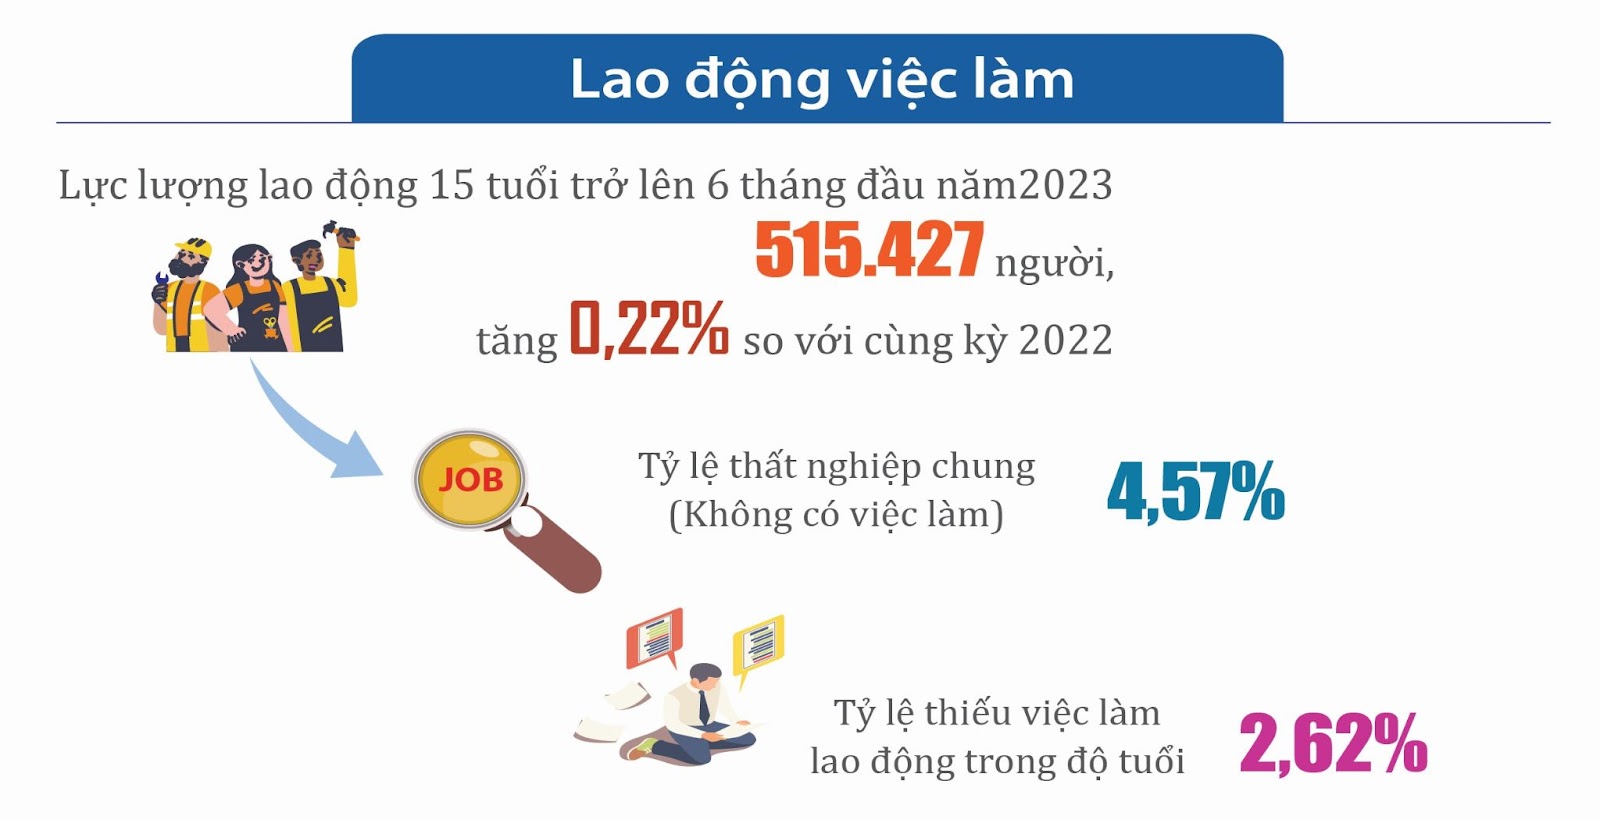 Tình hình lao động việc làm ở Hà Tĩnh trong 6 tháng đầu năm 2023